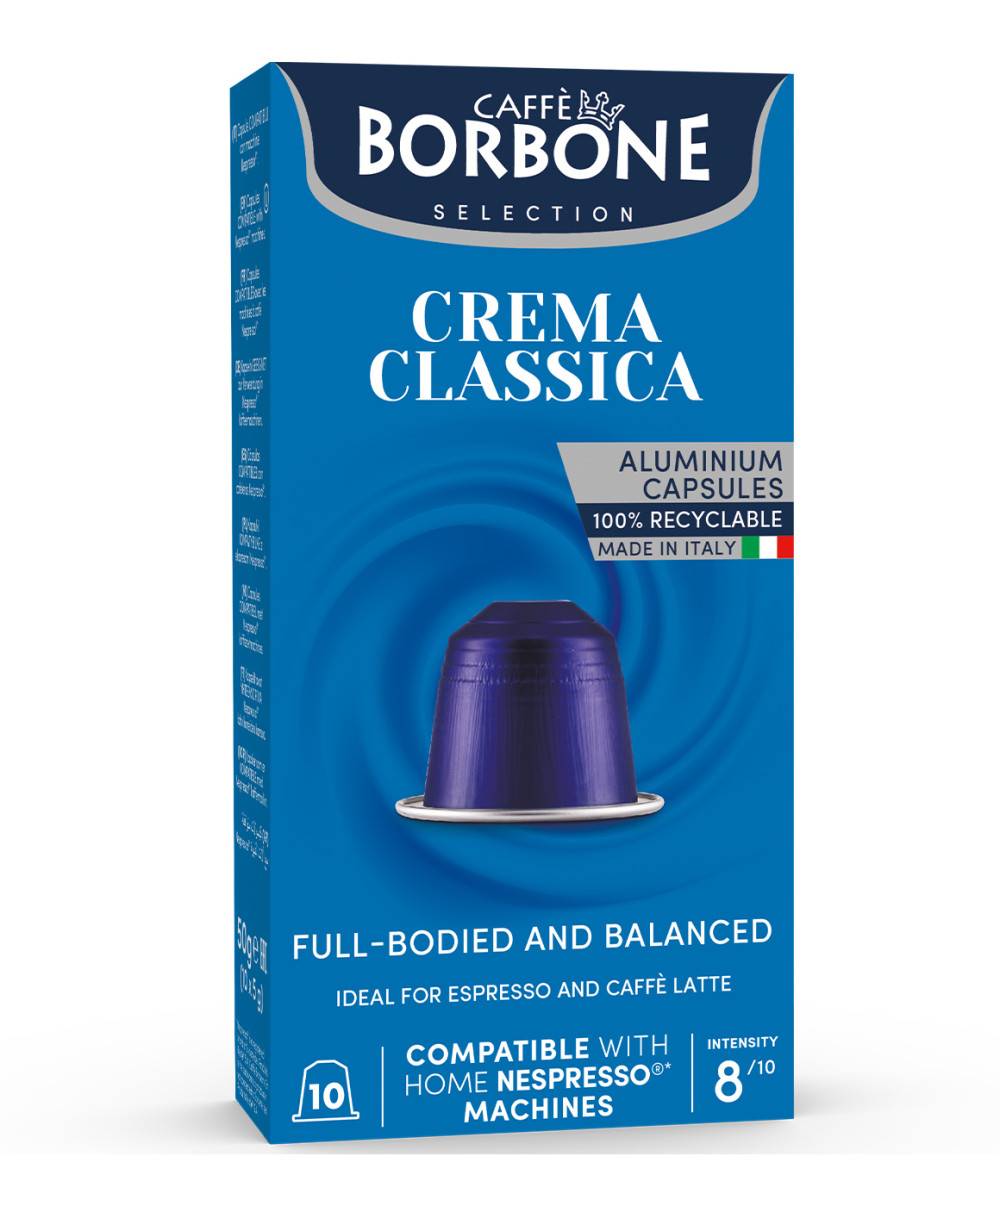 Borbone Caffé Nespresso x10 caps. - Crema Classica 50g  